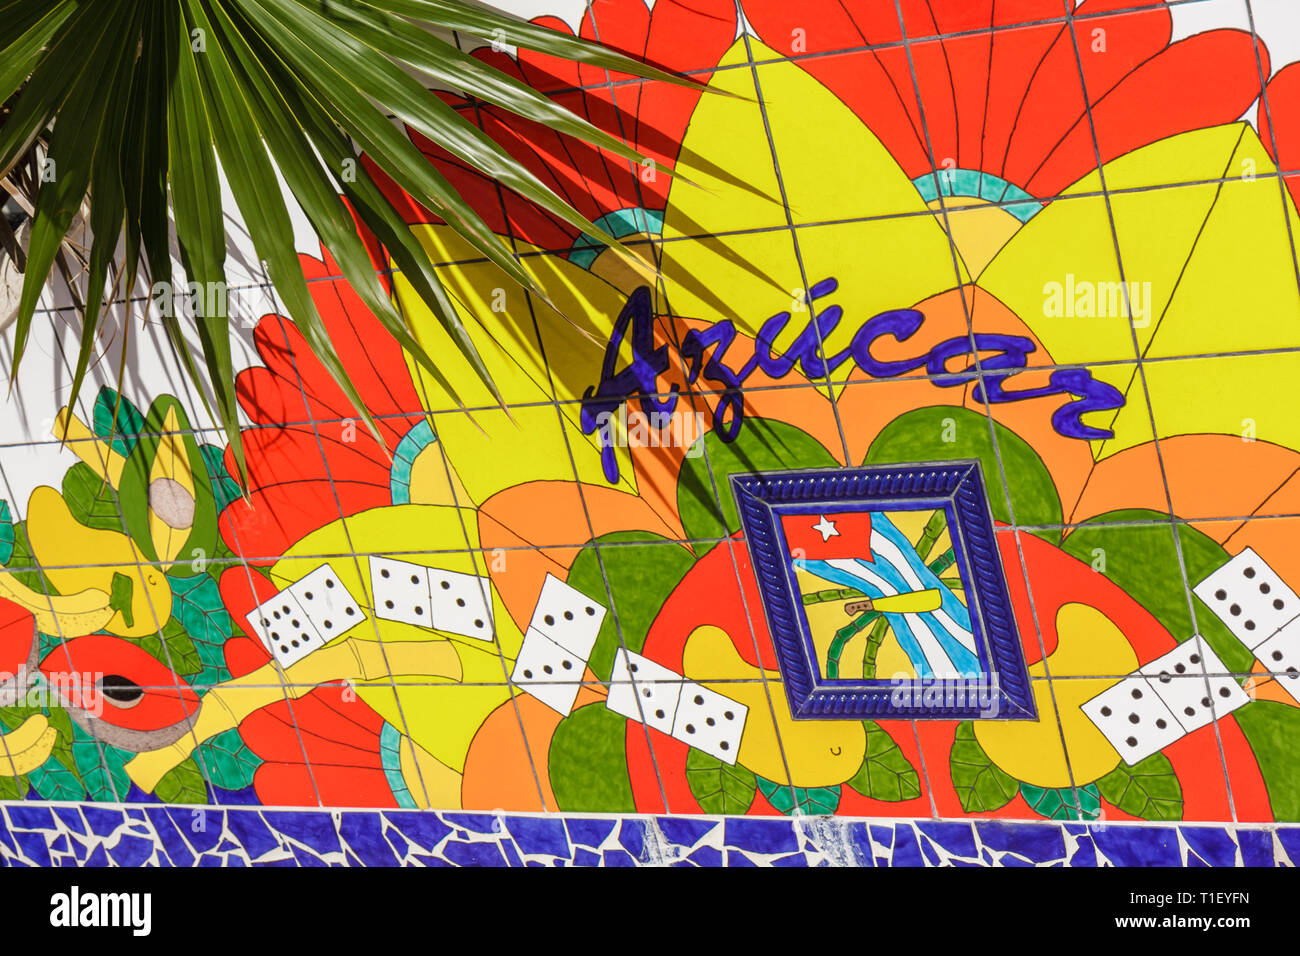 Miami Florida,Little Havana,Calle Ocho,Maximo Gomez Domino Park,carrelage,mosaïque,coloré,bleu,jaune,rouge,peint,azucar,sucre,langue espagnole,bilingue,t Banque D'Images